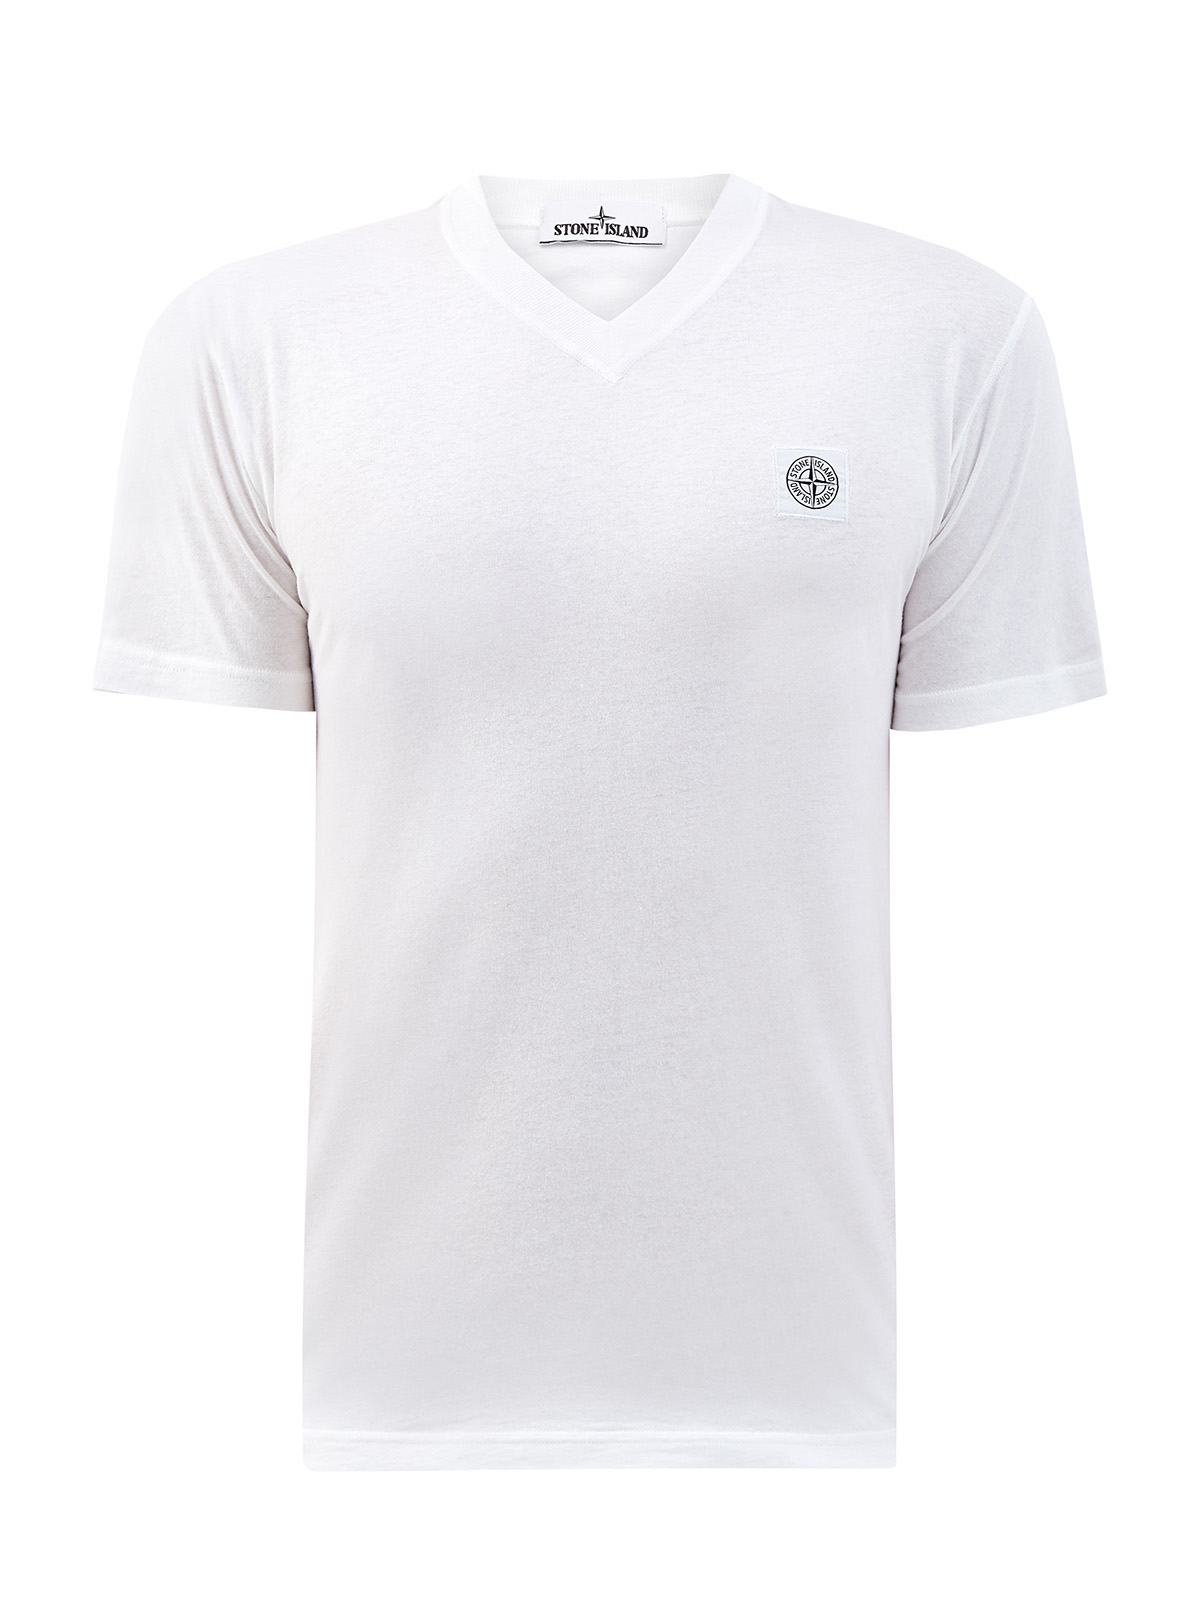 Белая футболка из хлопка с V-образным вырезом STONE ISLAND, цвет белый, размер S;M;L;XL;2XL;3XL - фото 1